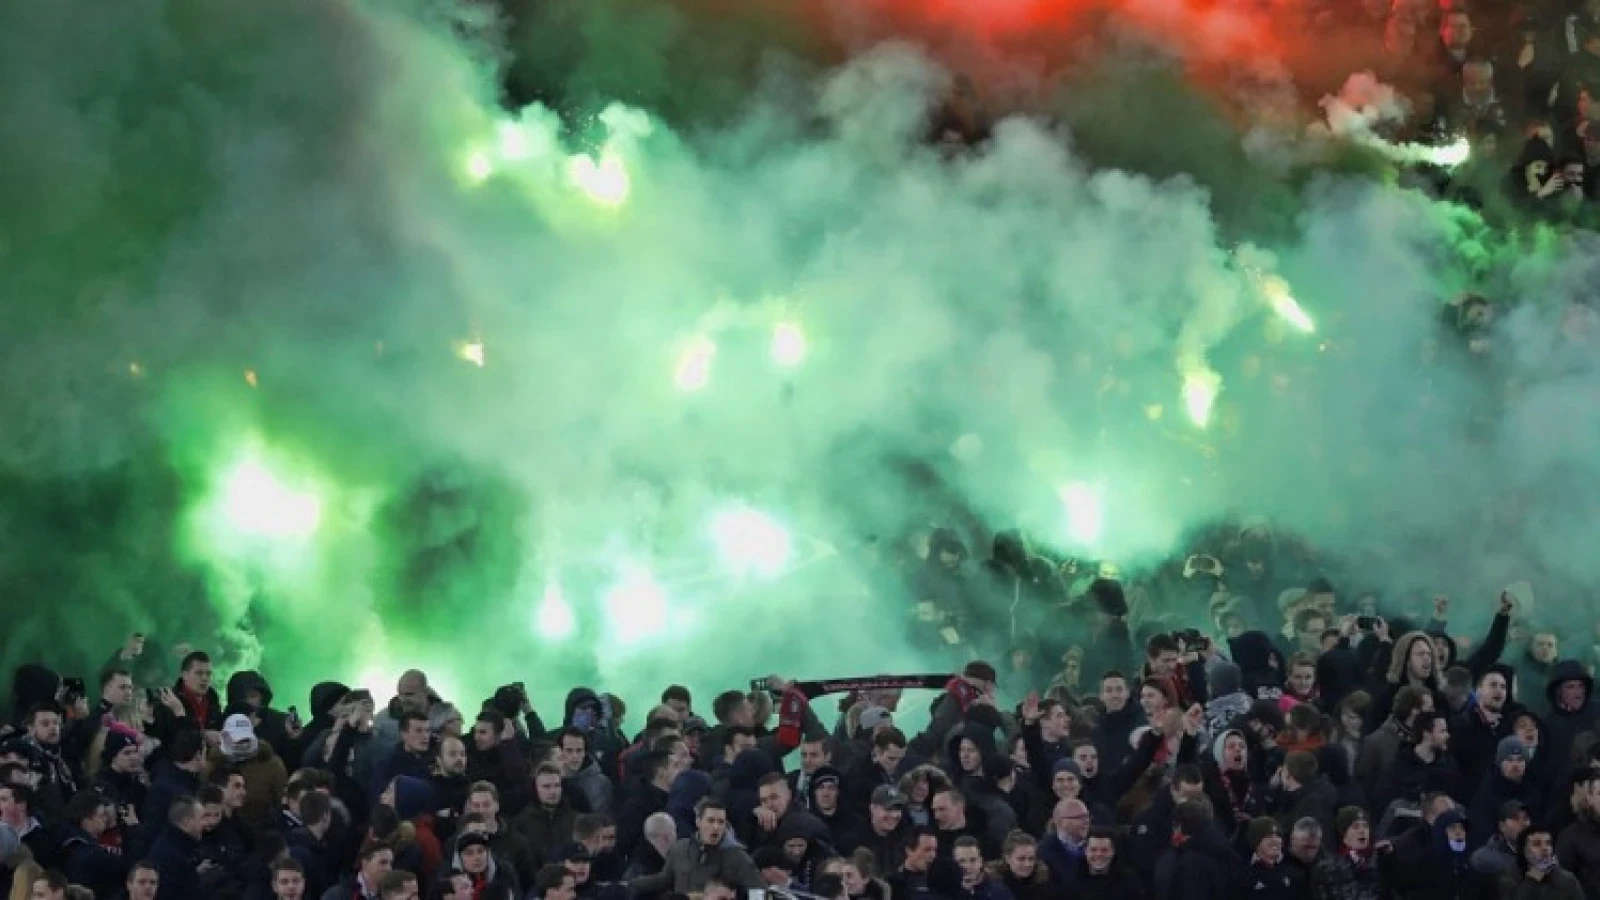 Feyenoordfans luiden met vuurwerk verjaardag in